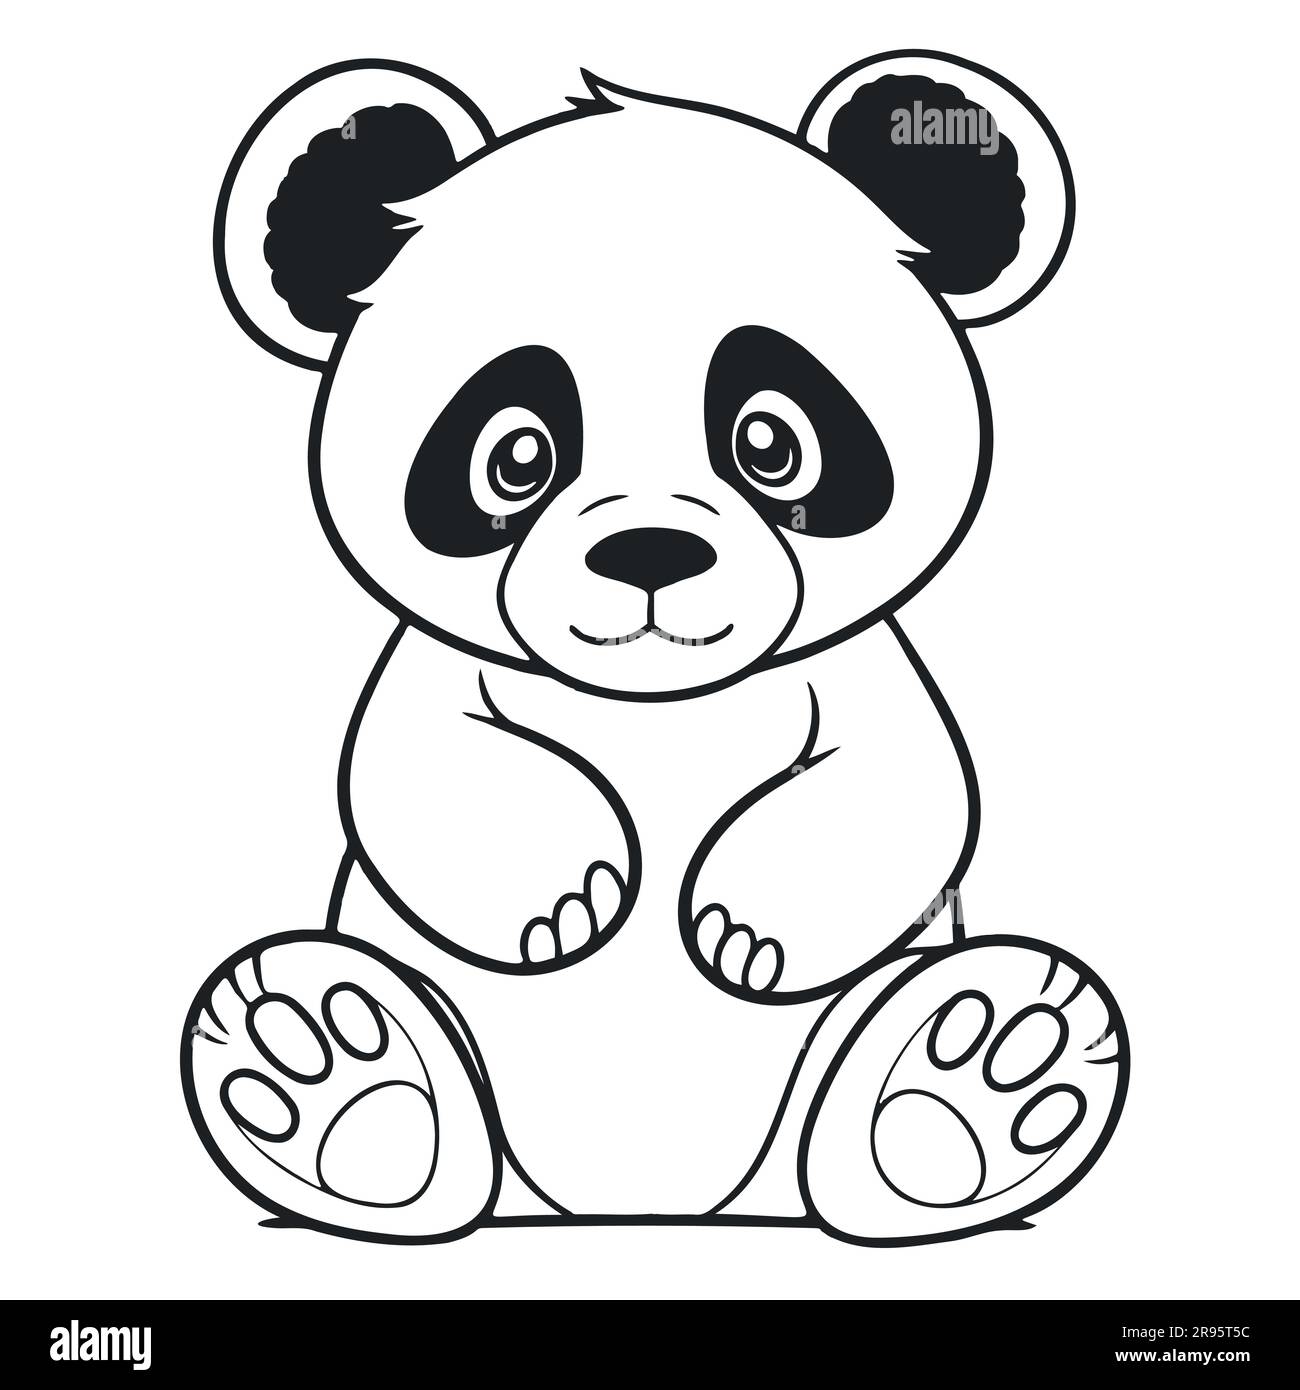 Schwarz-Weiß-Zeichnung eines süßen jungen Pandas Stock Vektor